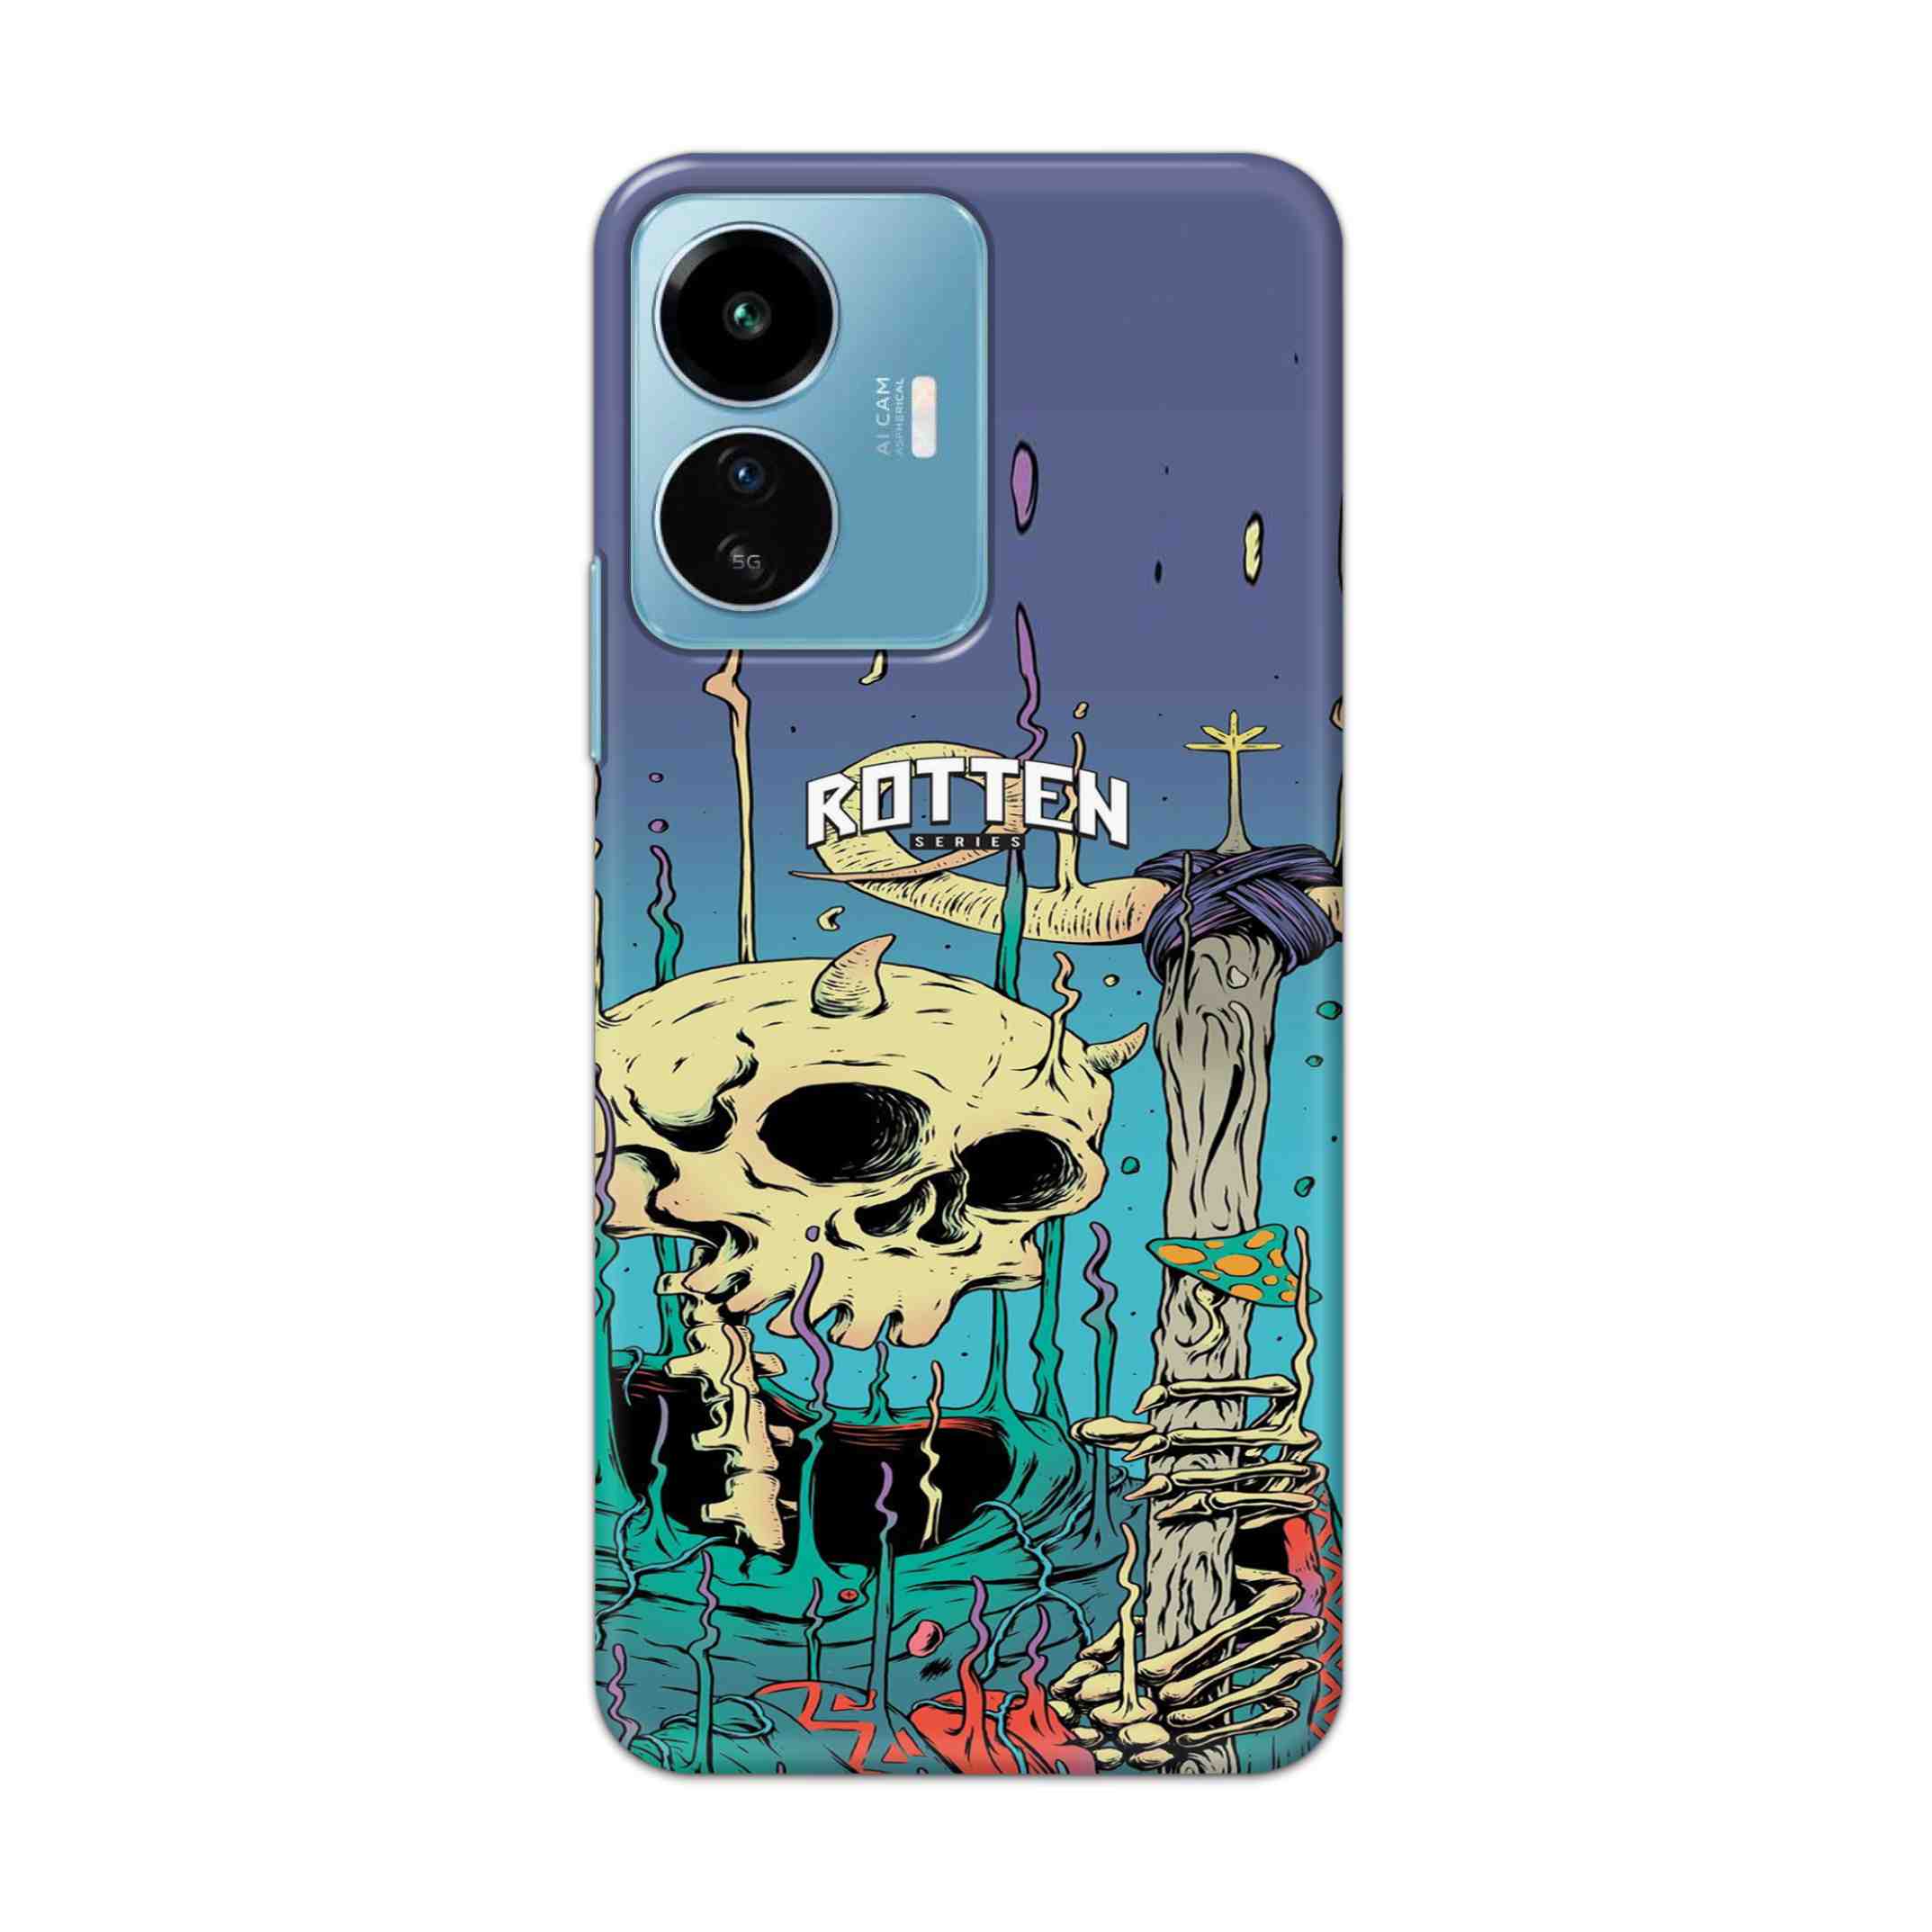 Buy Skull Hard Back Mobile Phone Case Cover For IQOO Z6 Lite 5G Online